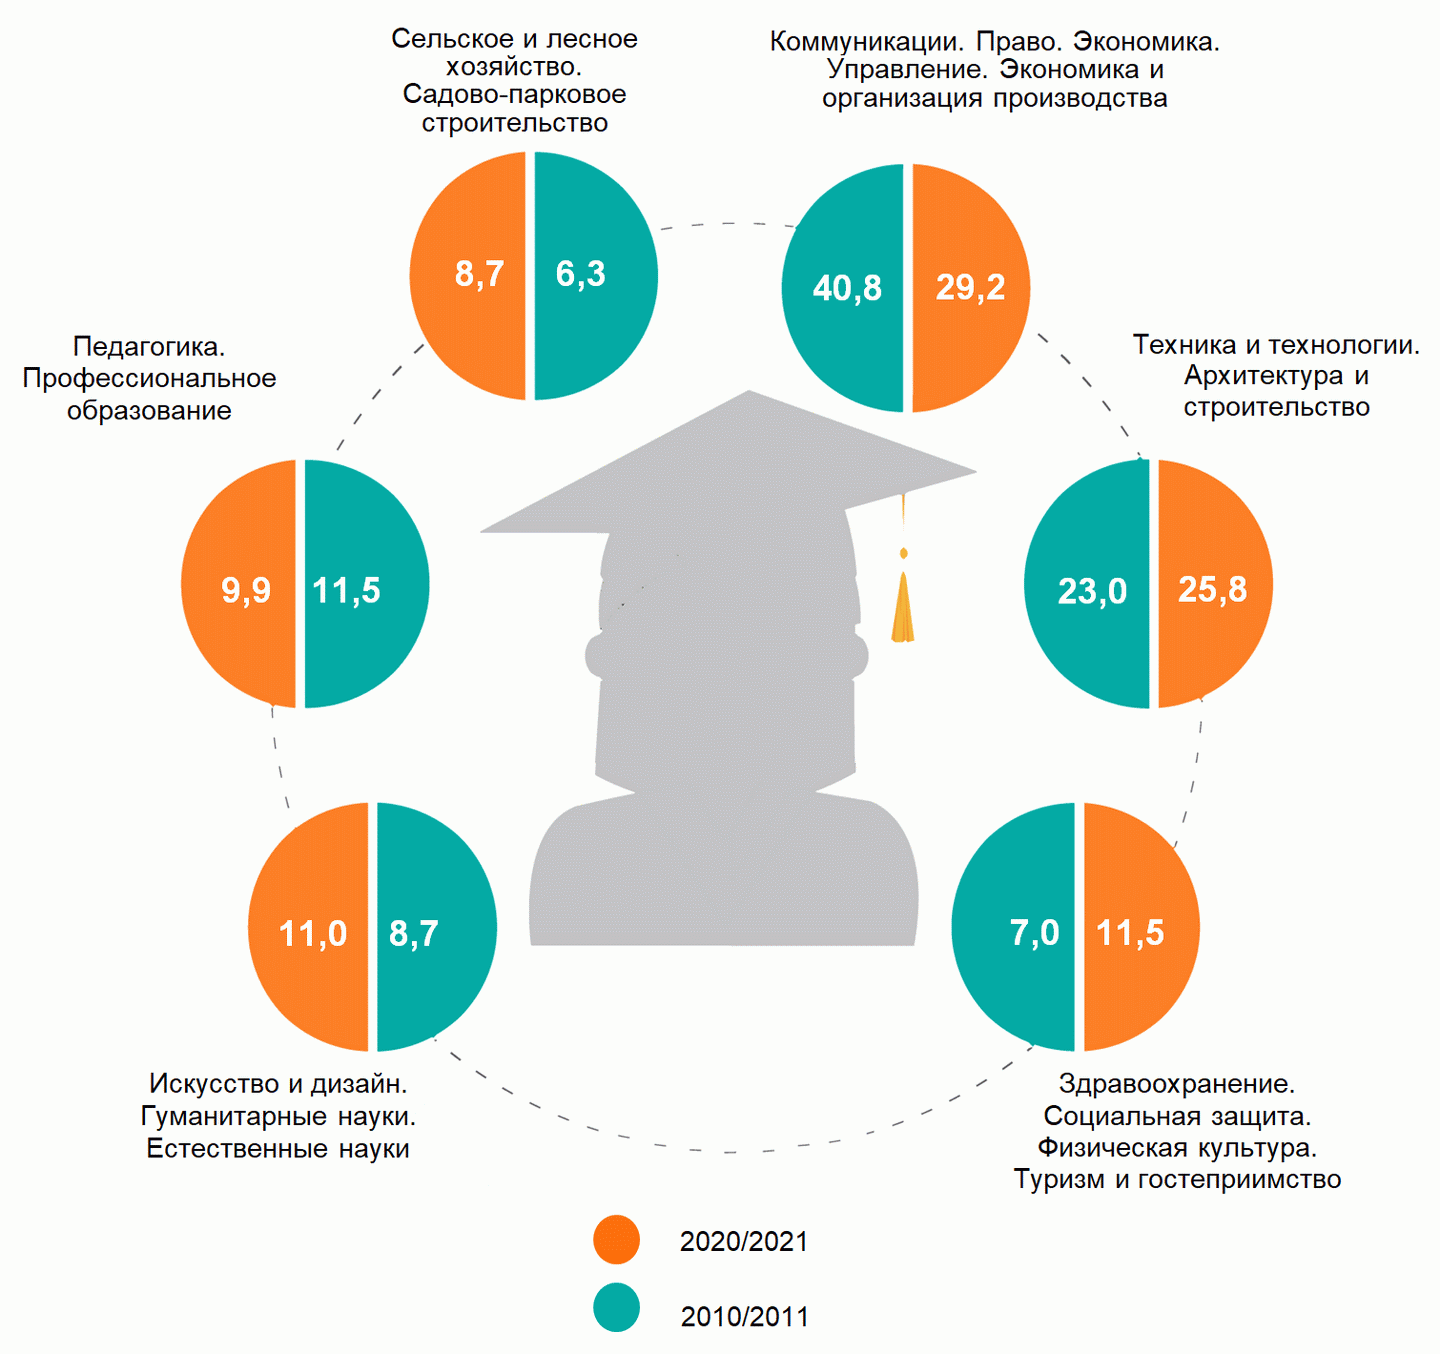 Студенты по профилю образования
(на начало учебного года;
в процентах к общей численности студентов)/belstat.gov.by